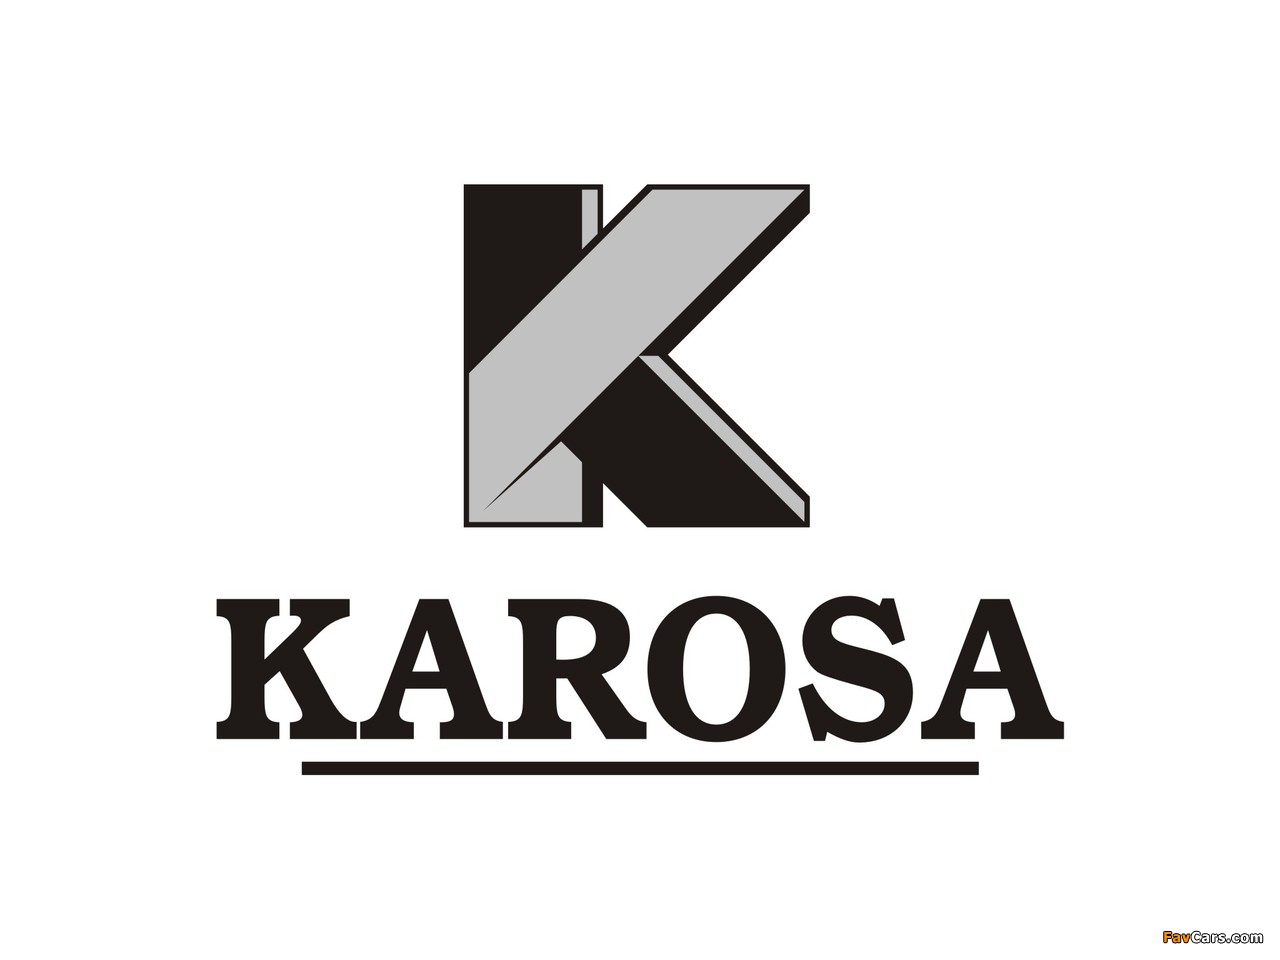 Karosa photos (1280 x 960)